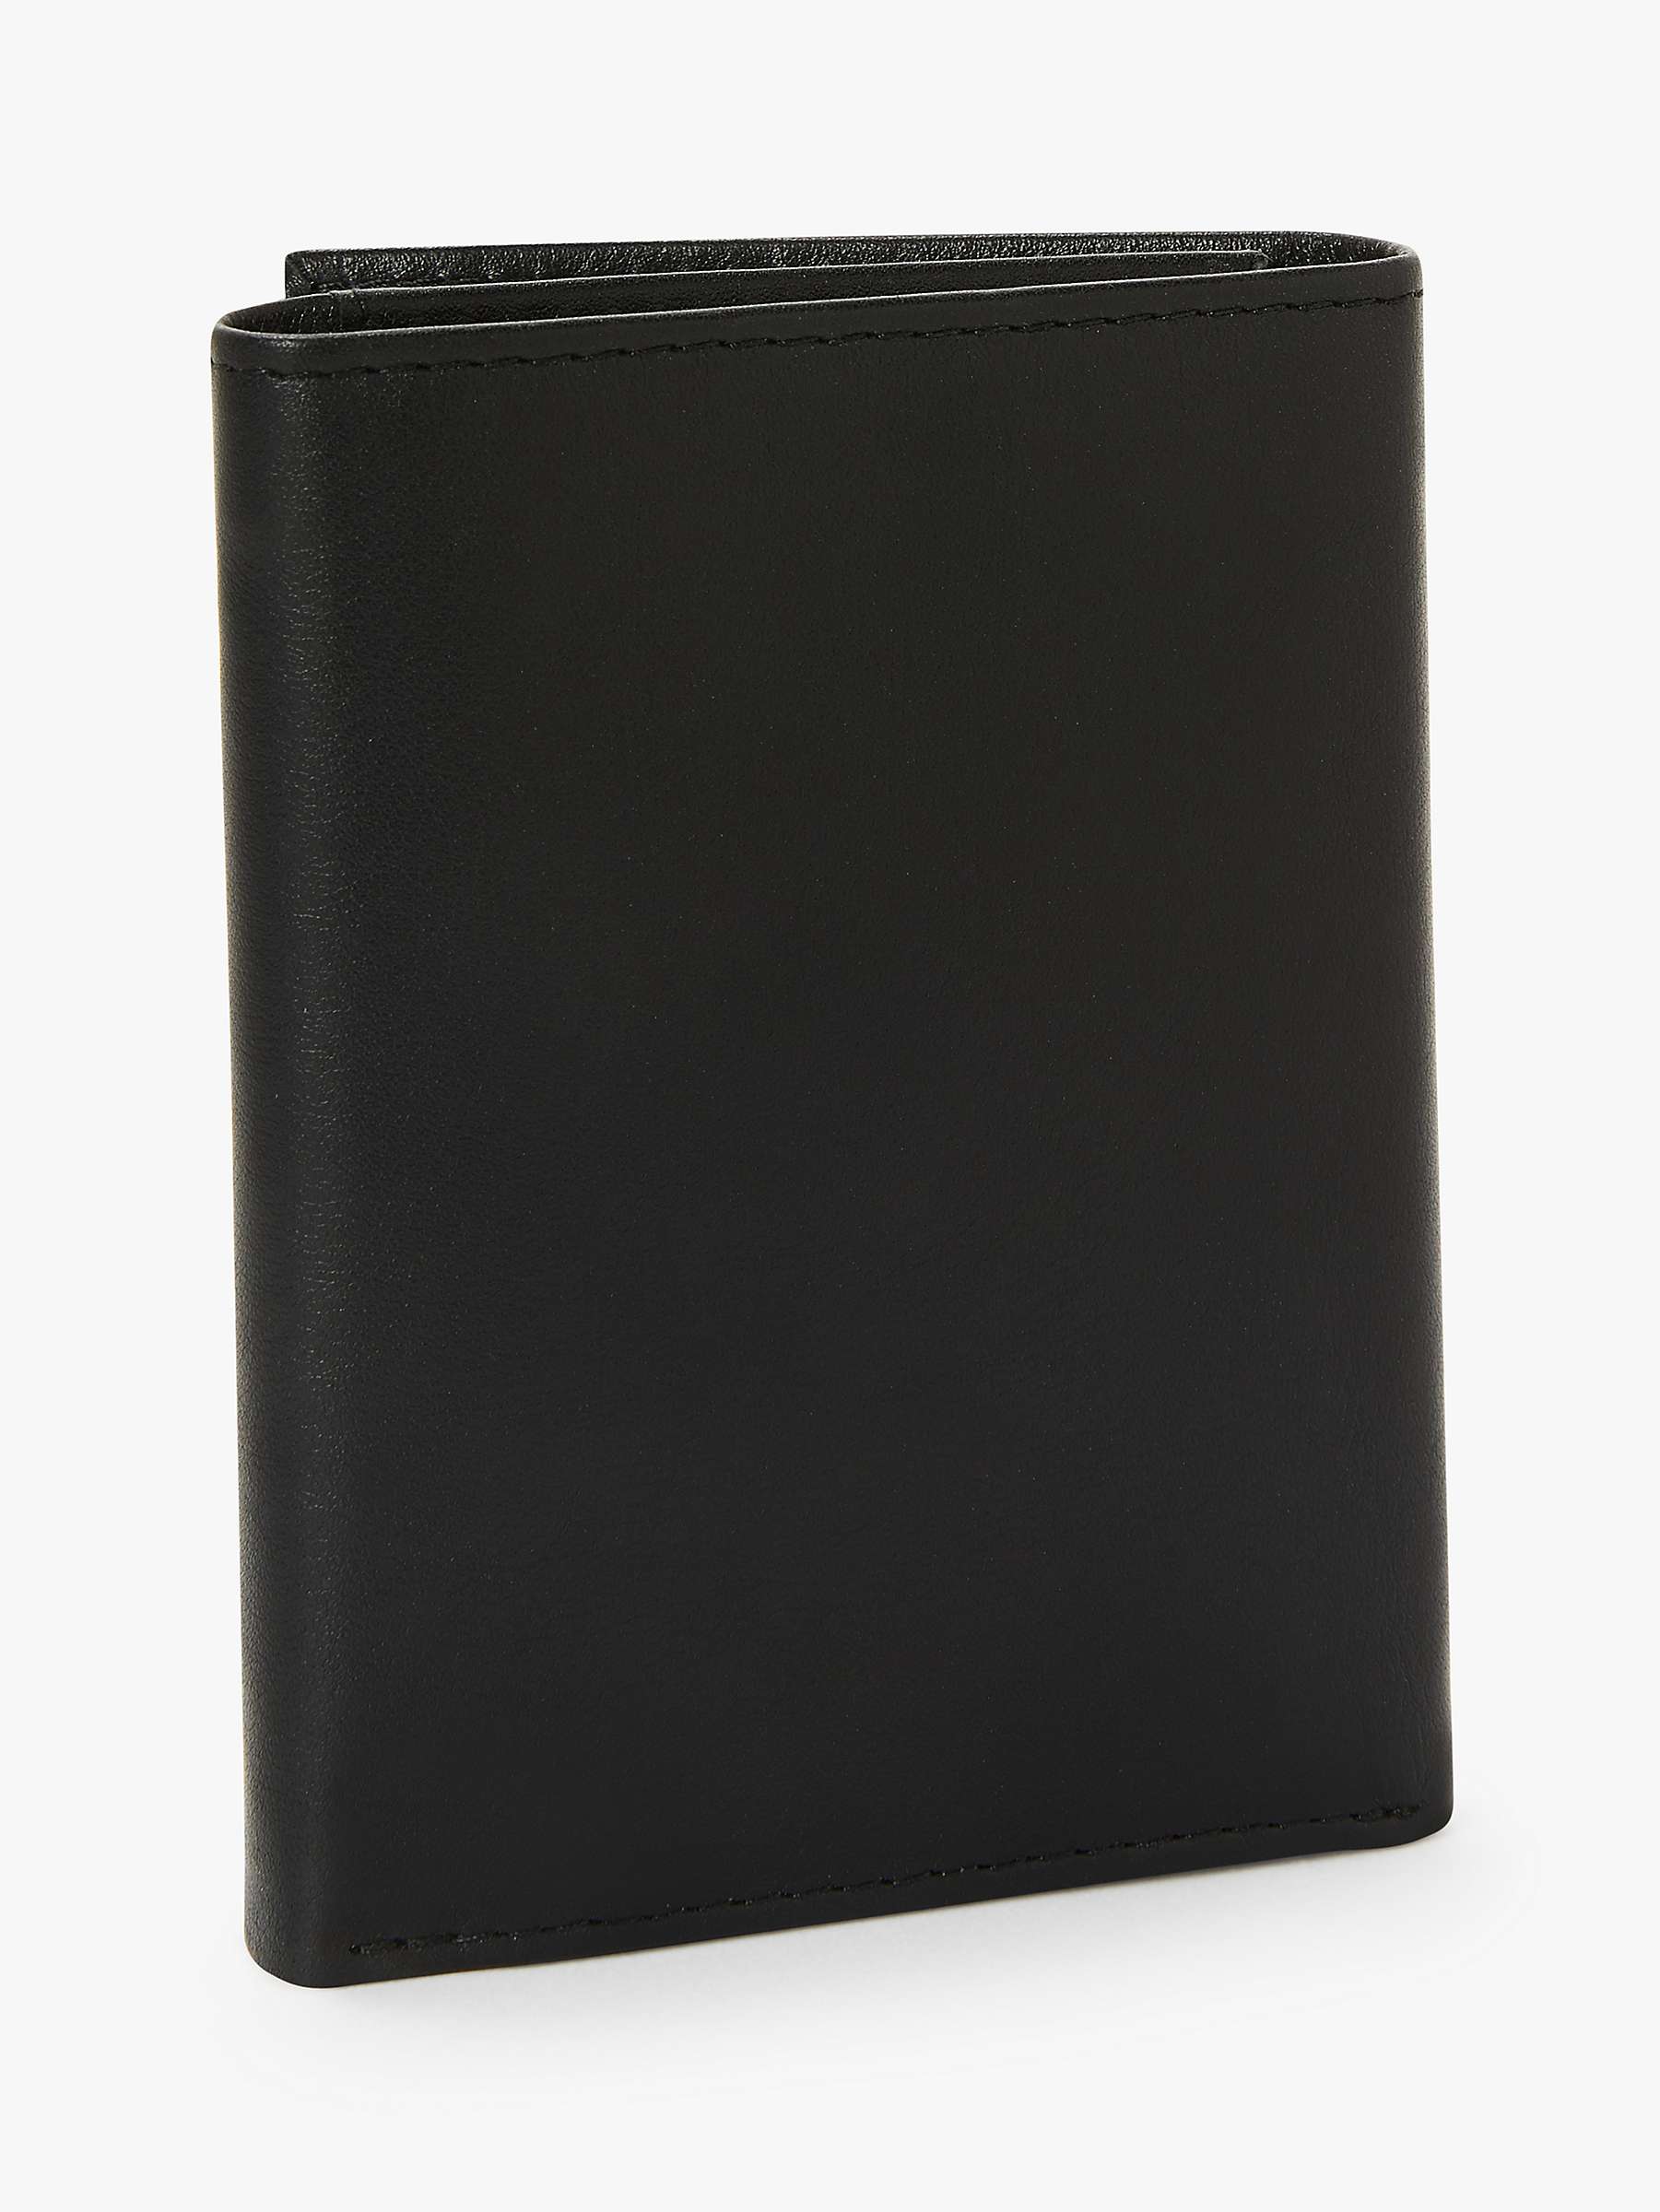 Buy Ted Baker Jonnys Leather Wallet, Black Online at johnlewis.com